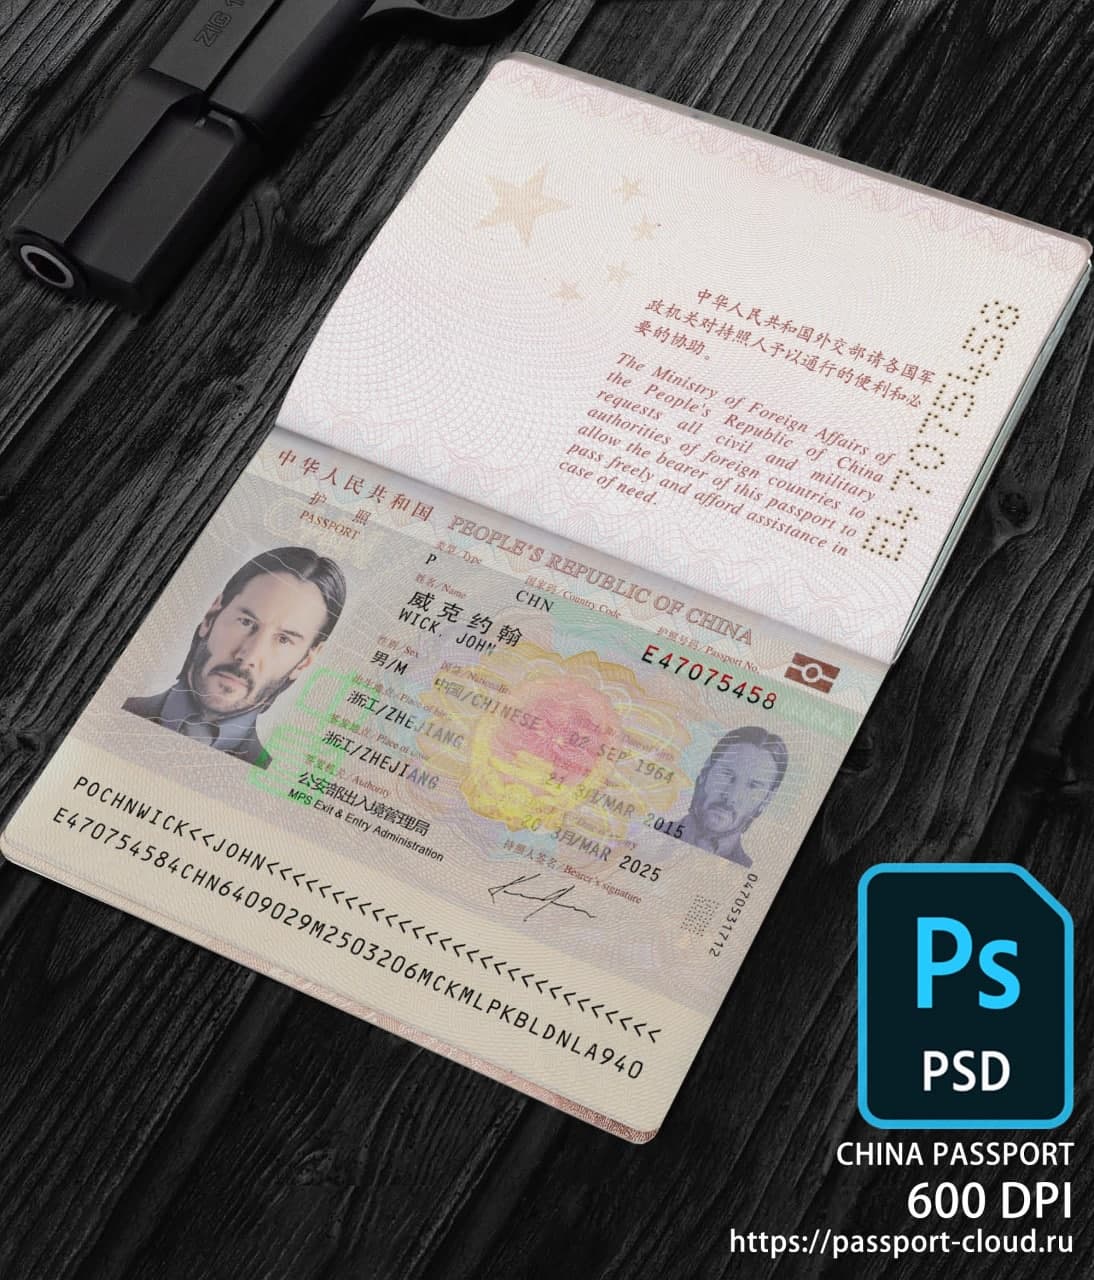 China Passport-0